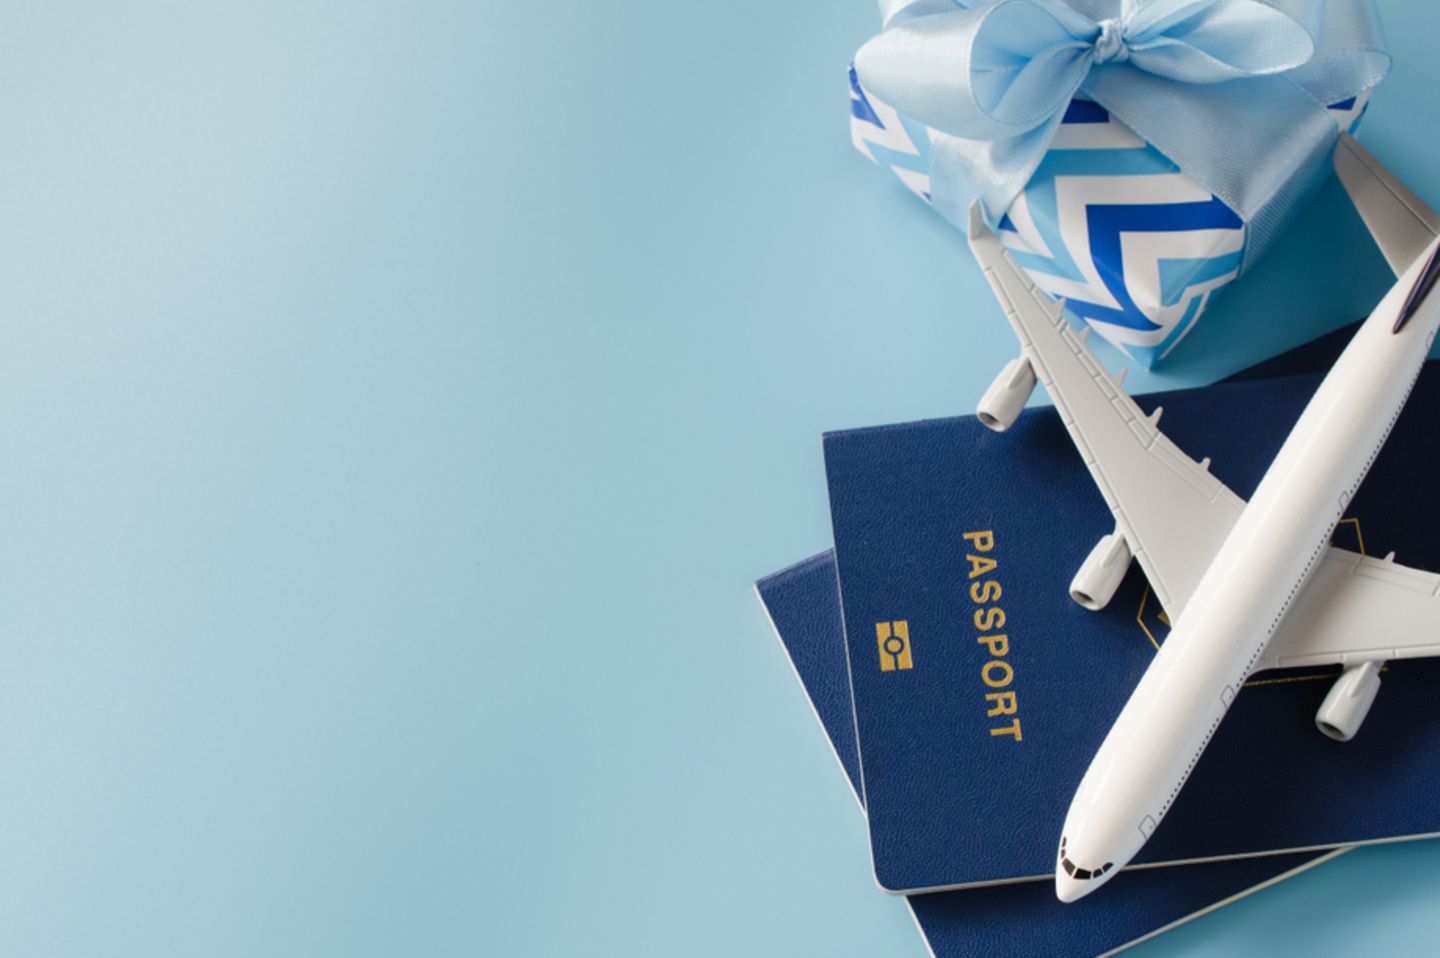 Reise-Geschenke: Modellflugzeug auf Reisepass, daneben ein Geschenk